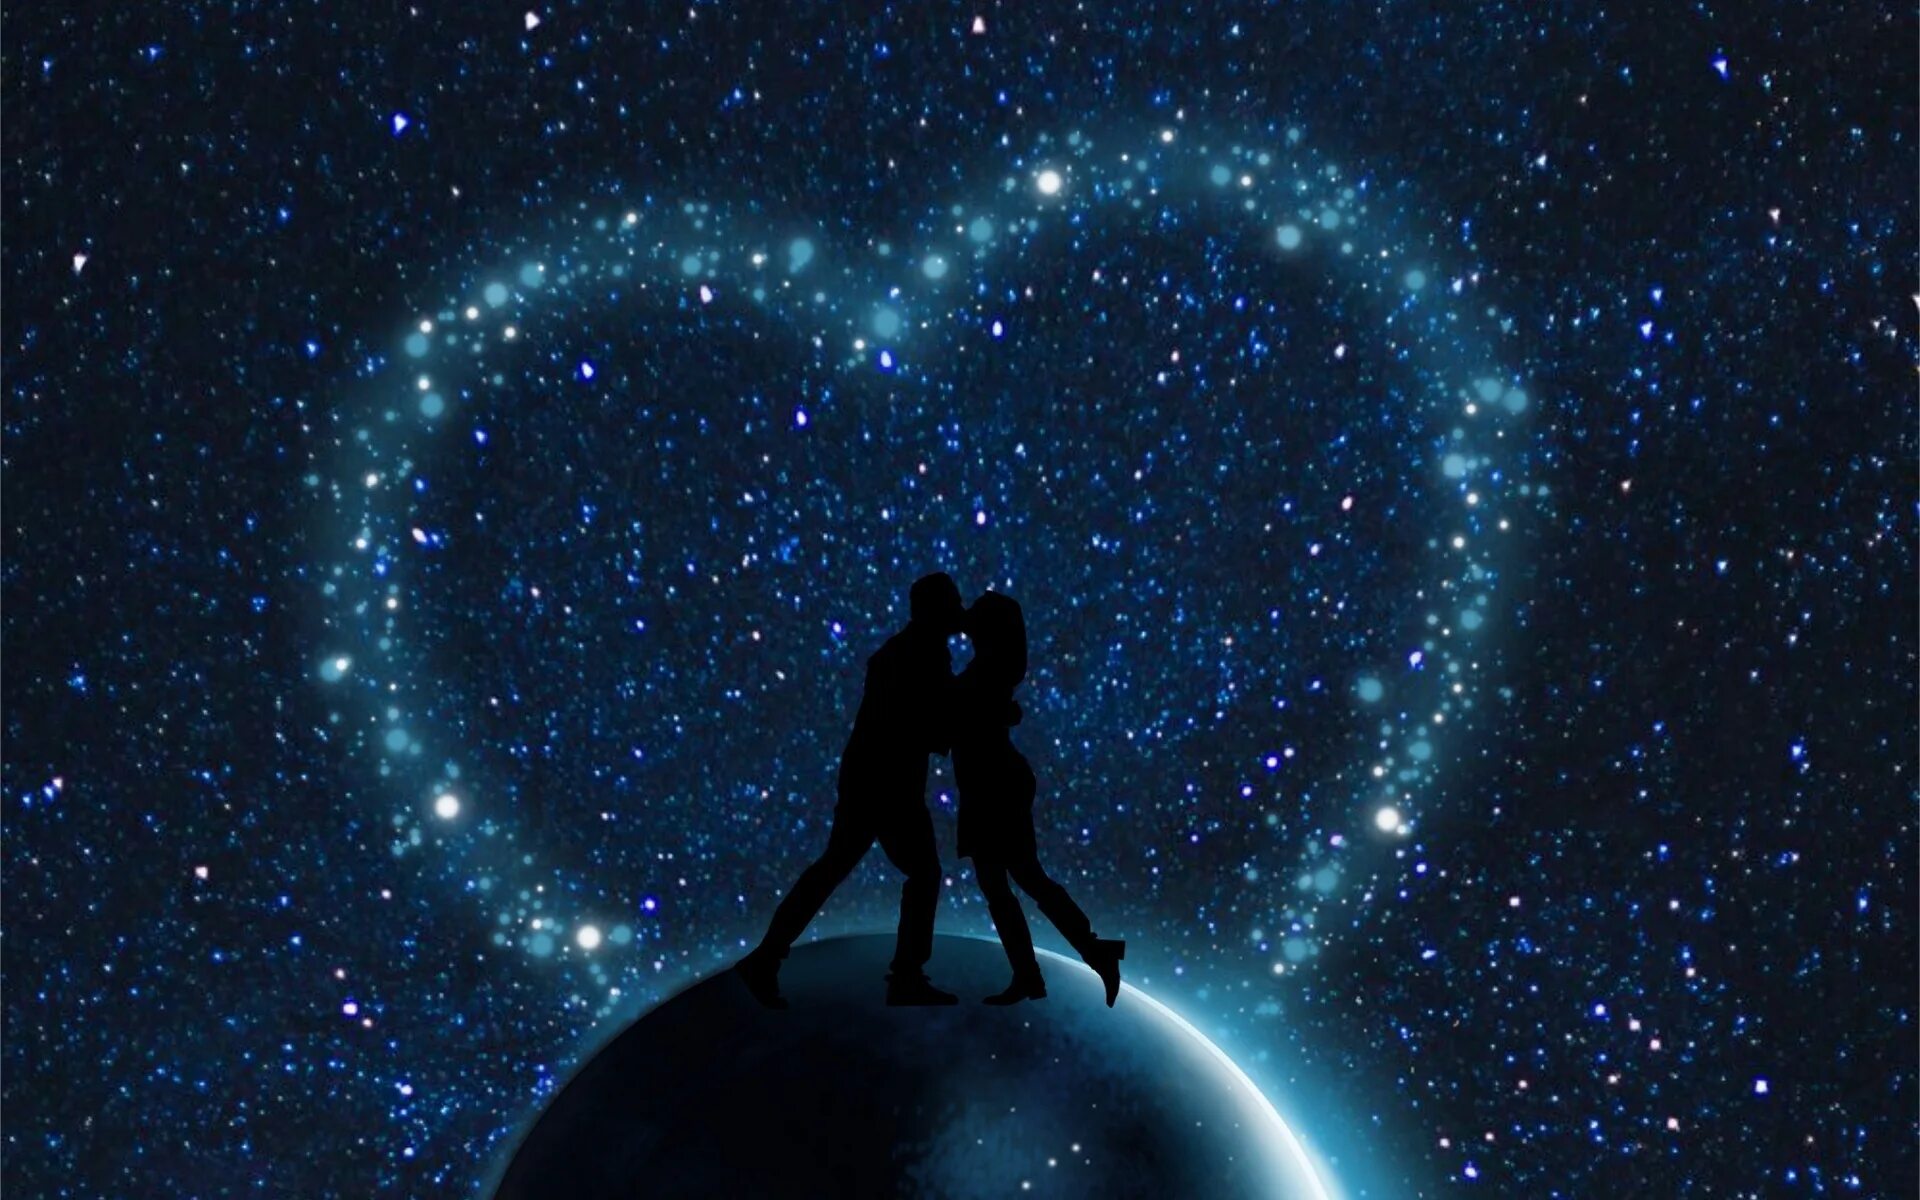 Двое под звездами. Космос любовь. Пара на фоне звездного неба. Вселенная и любовь.